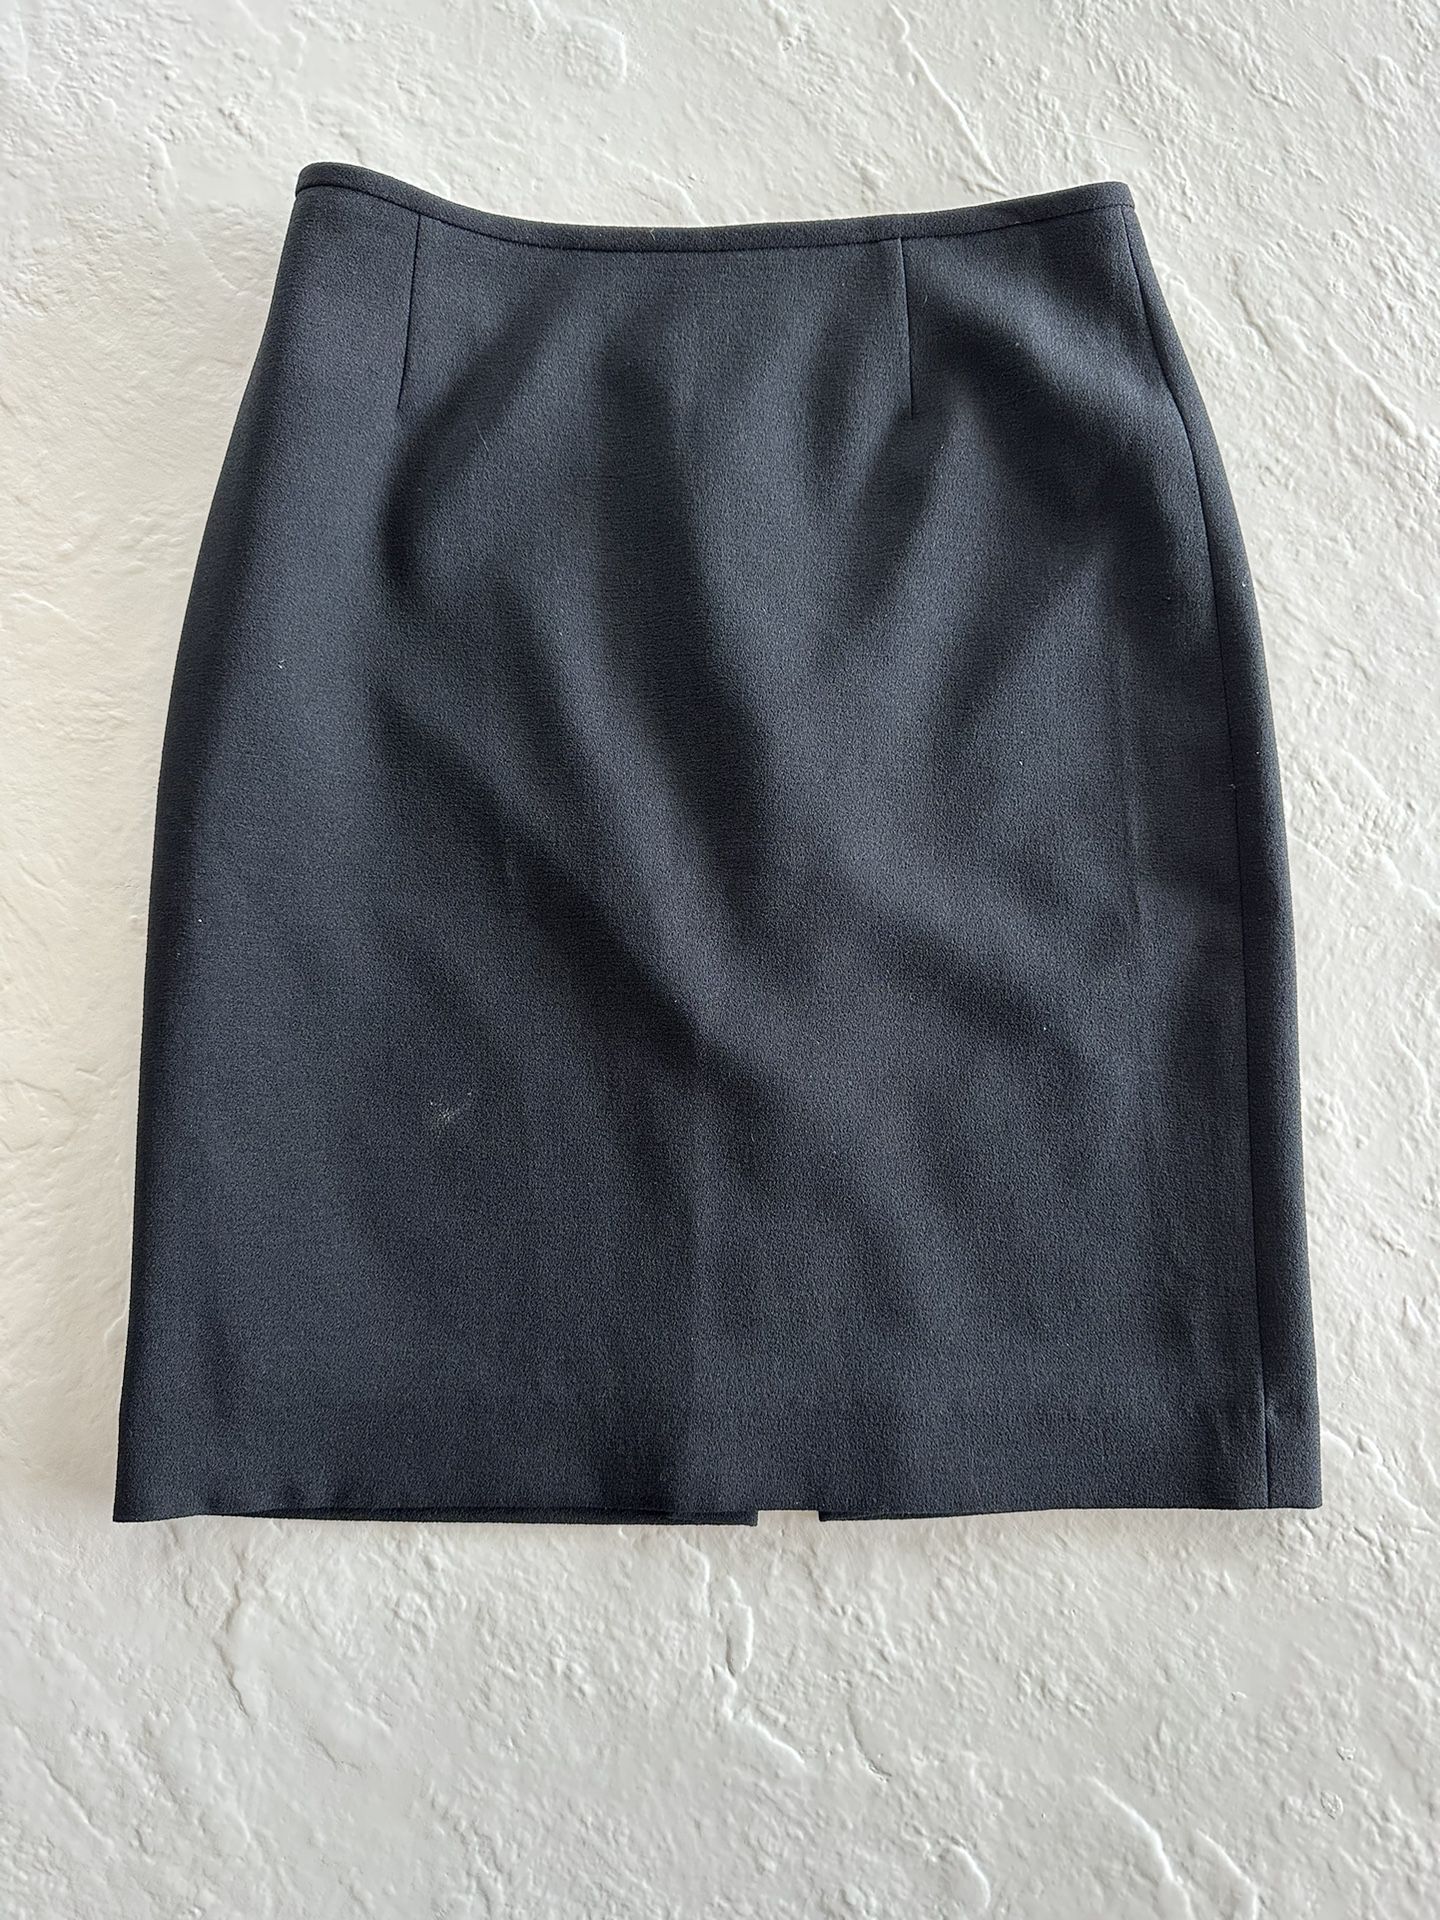 Women’s Black Pencil Skirt